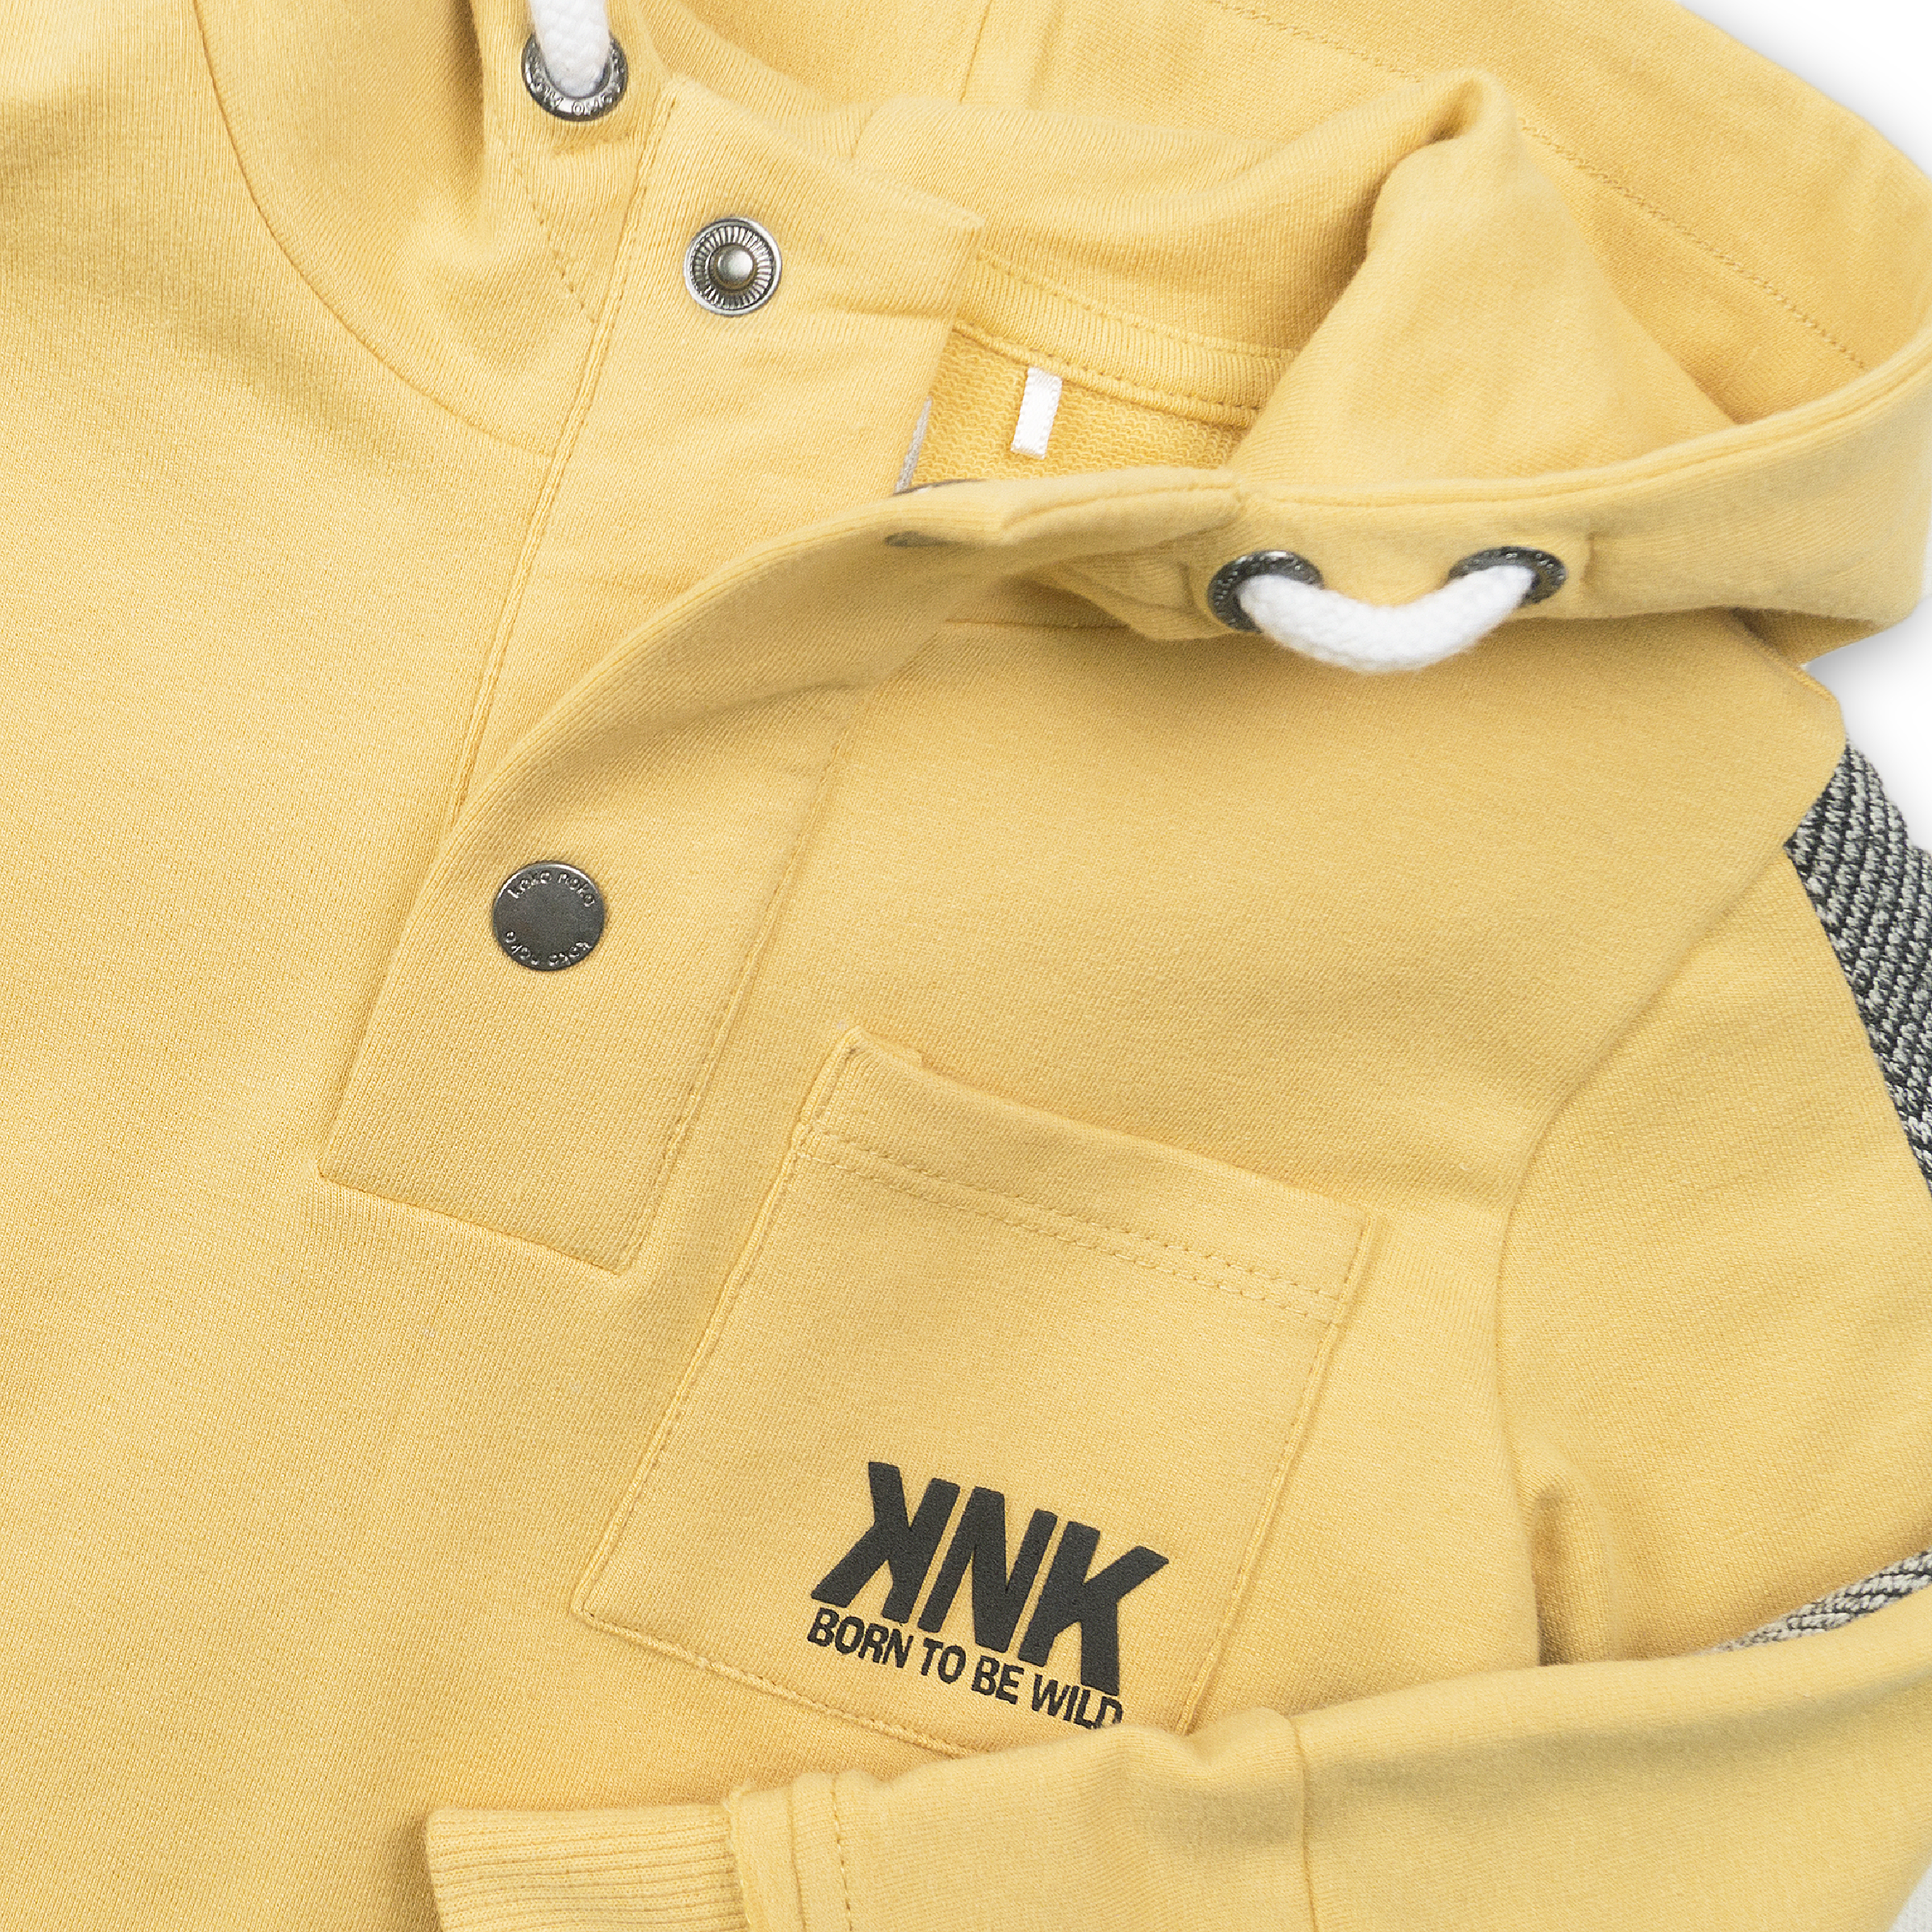 Jongens Sweater van Koko Noko in de kleur Yellow in maat 86.